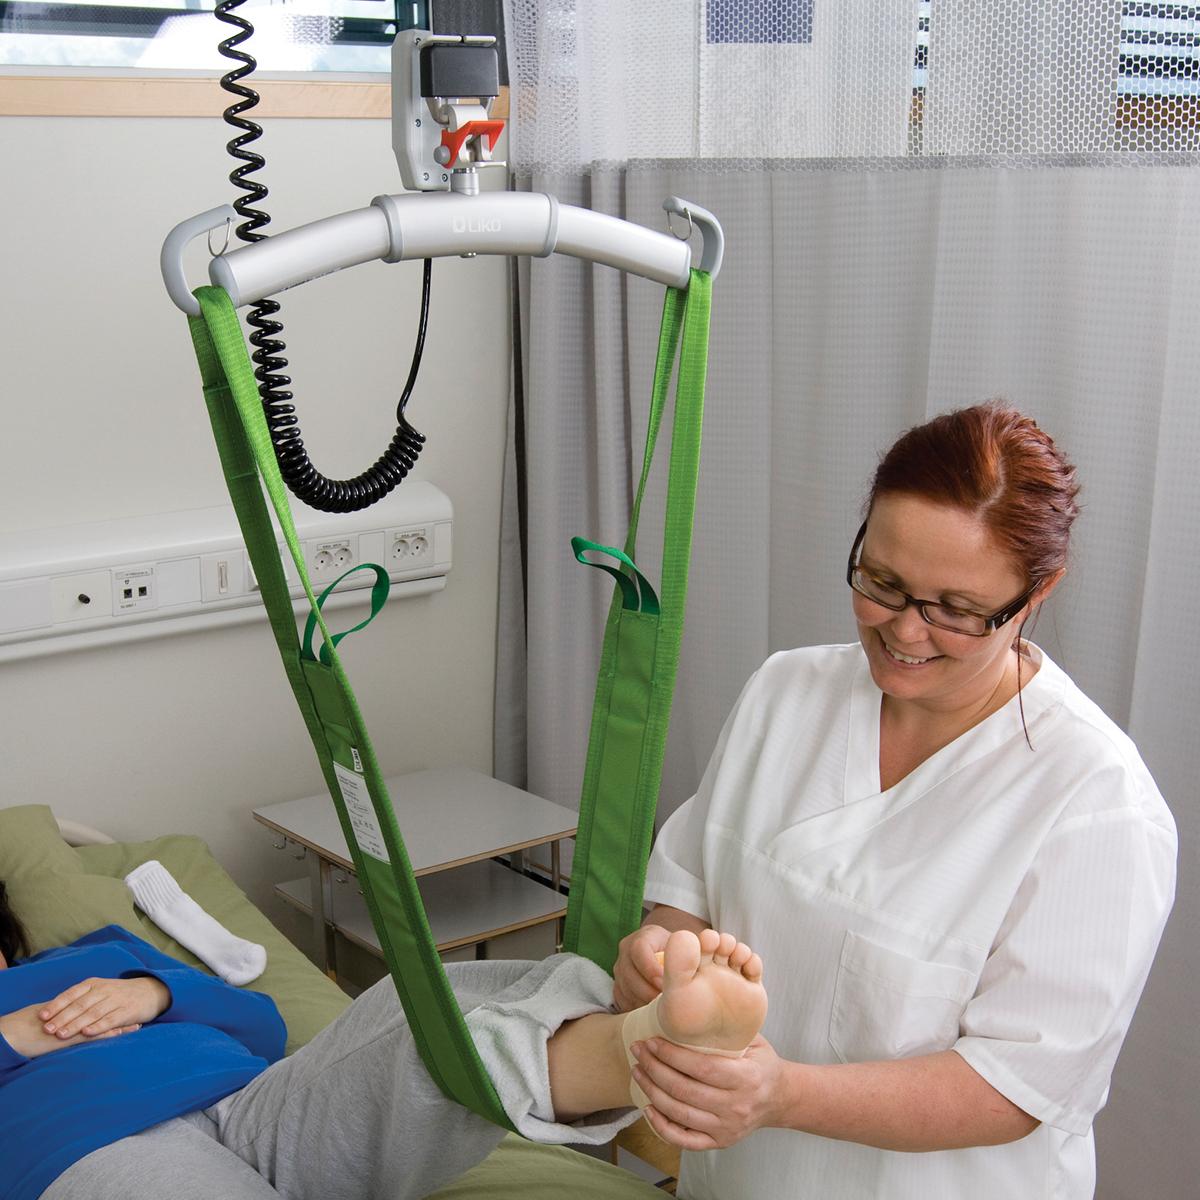 Dispositif d'aide au levage MultiStrap™ vert, utilisé pour lever le pied gauche d'un patient semi-allongé, maintenu par une clinicienne portant des lunettes